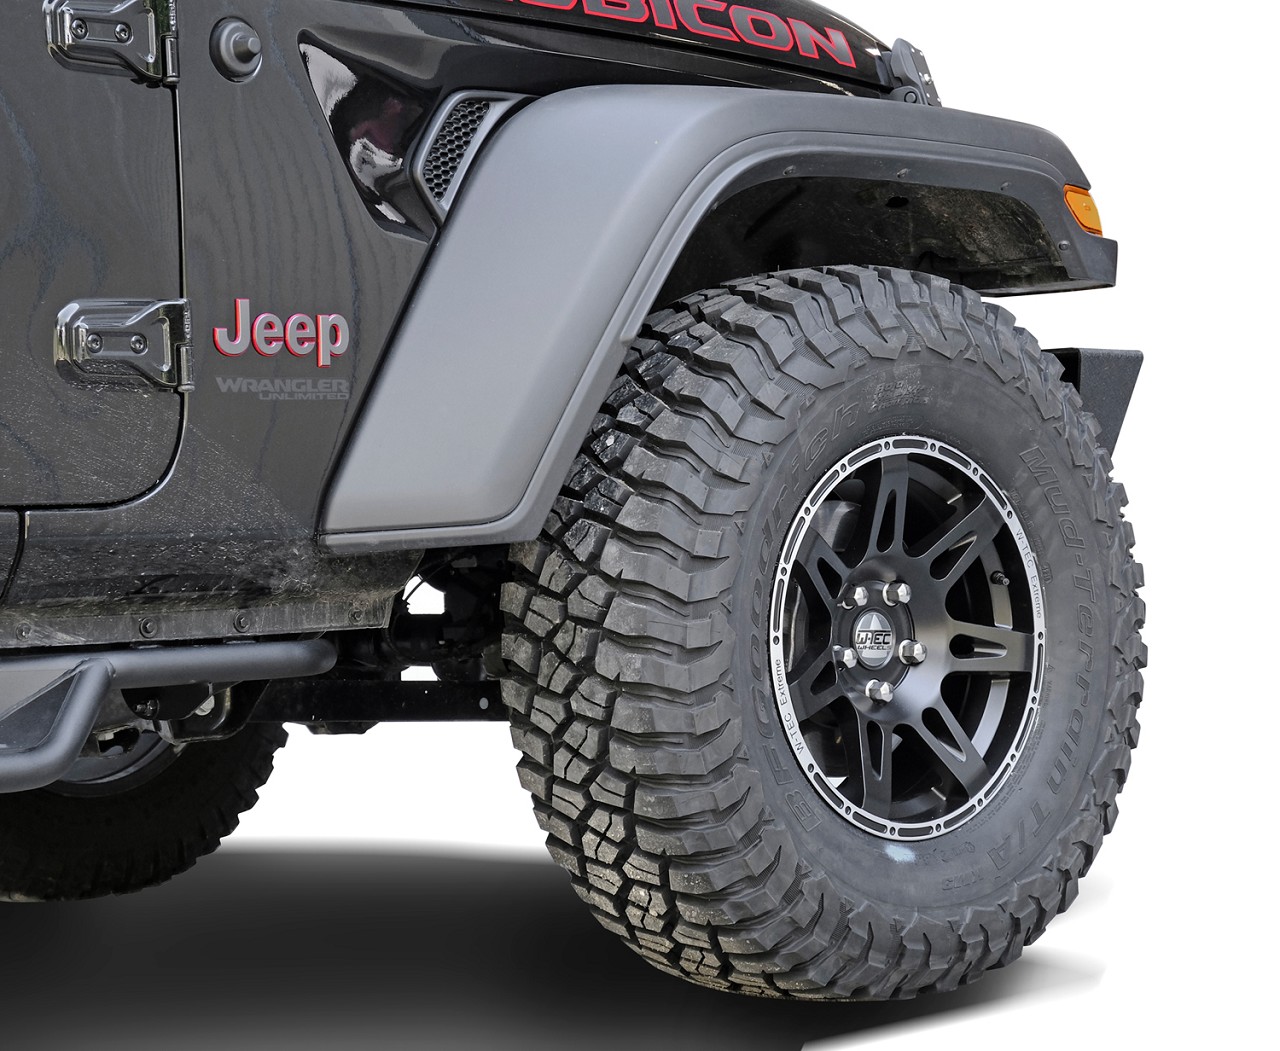 1x Alufelge W-TEC Extreme 8,5x17 ET+30 schwarz-silber passend für Jeep Gladiator JT (2019-)